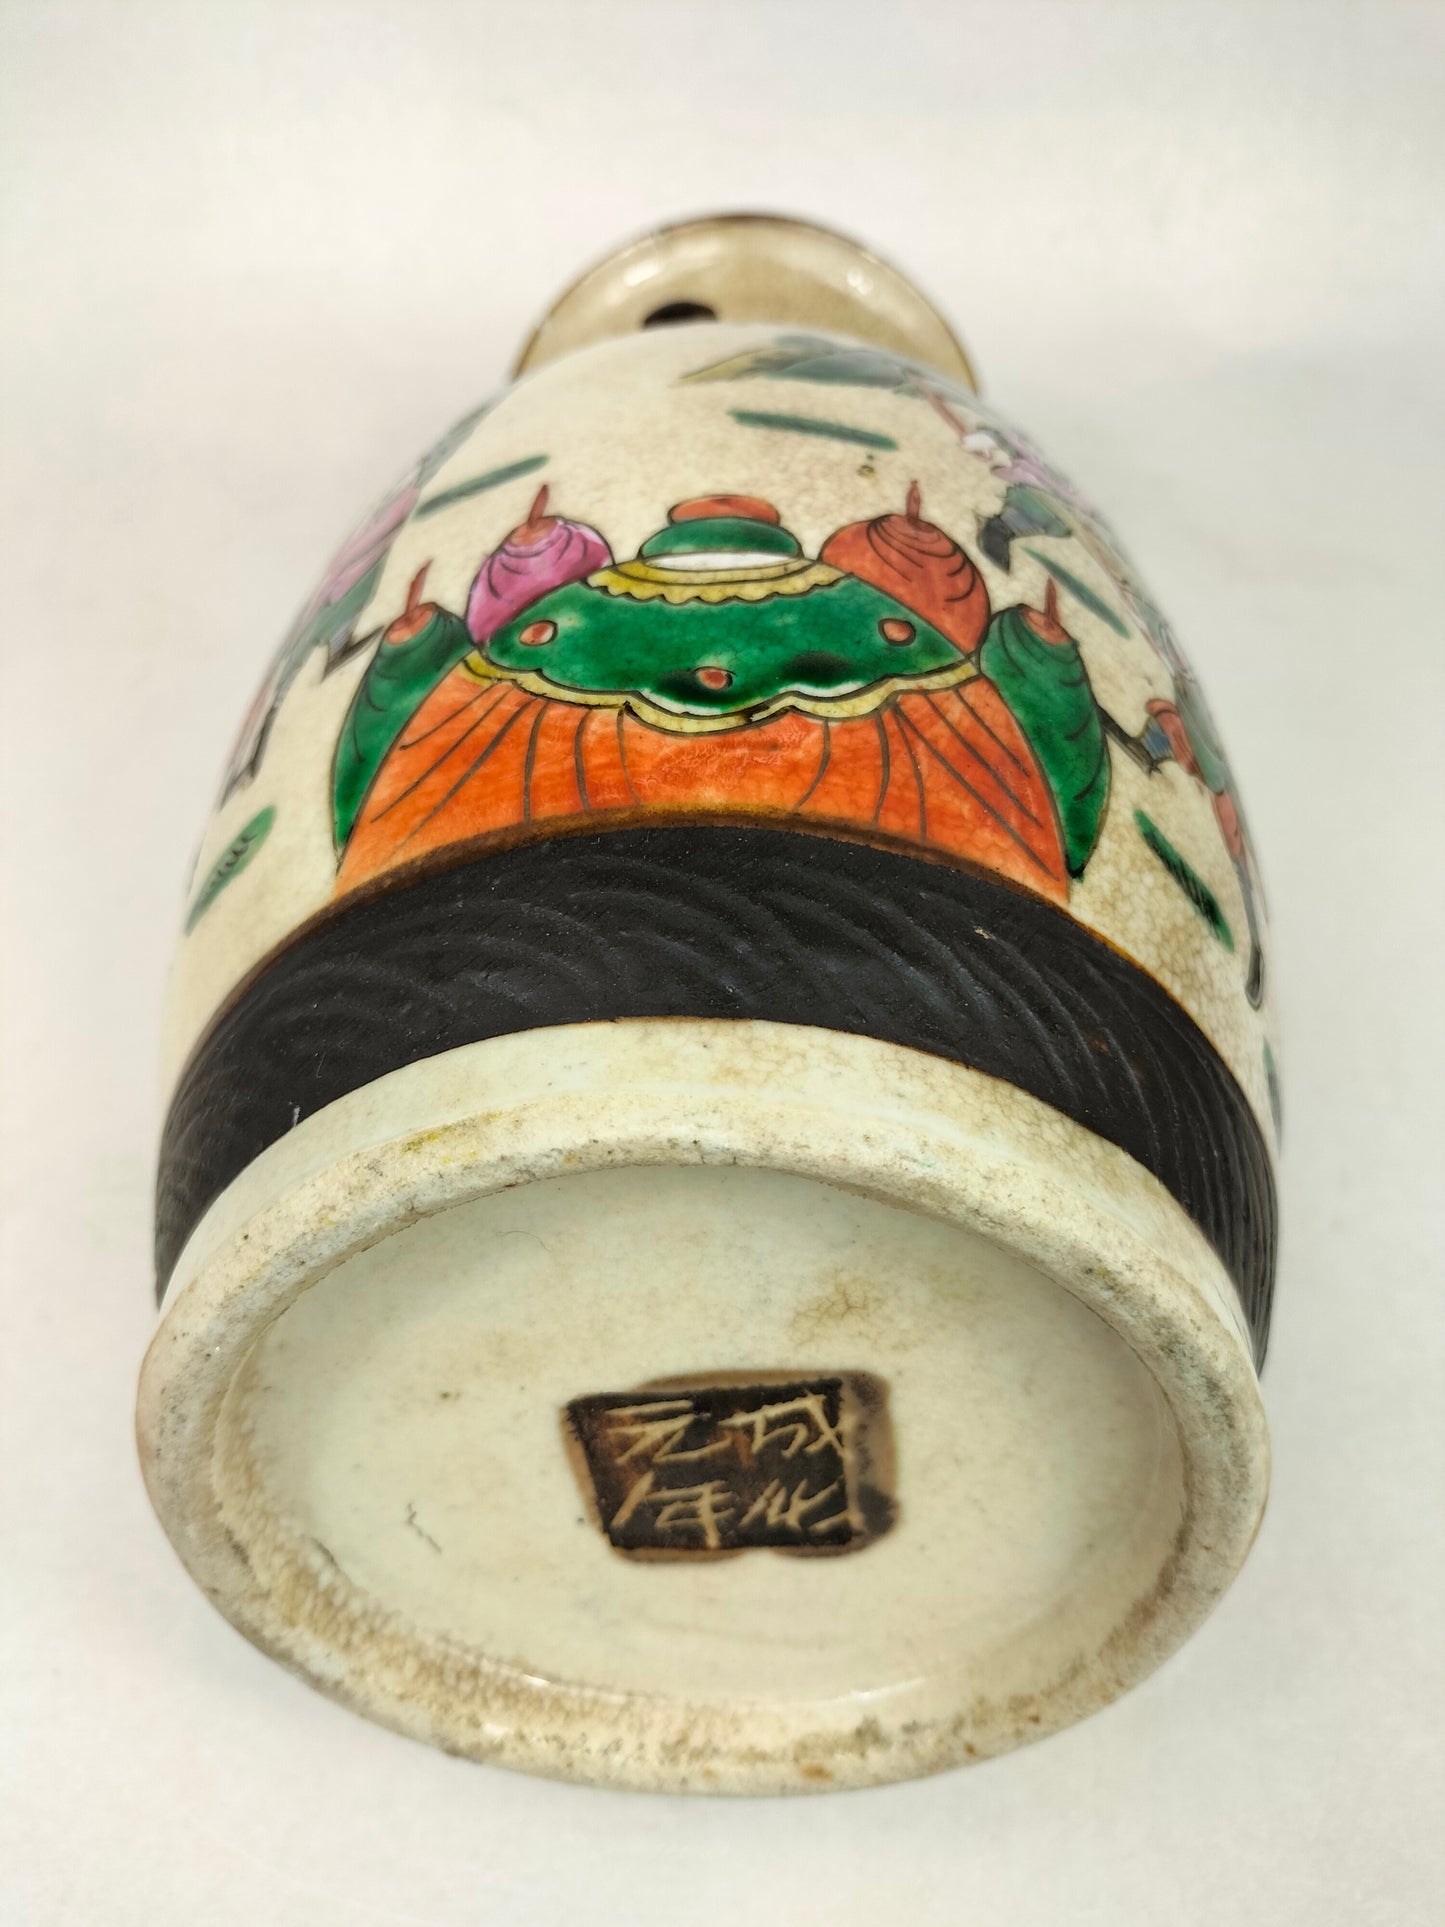 装饰有武士的中国古董南京花瓶 // 清朝 - 19 世纪